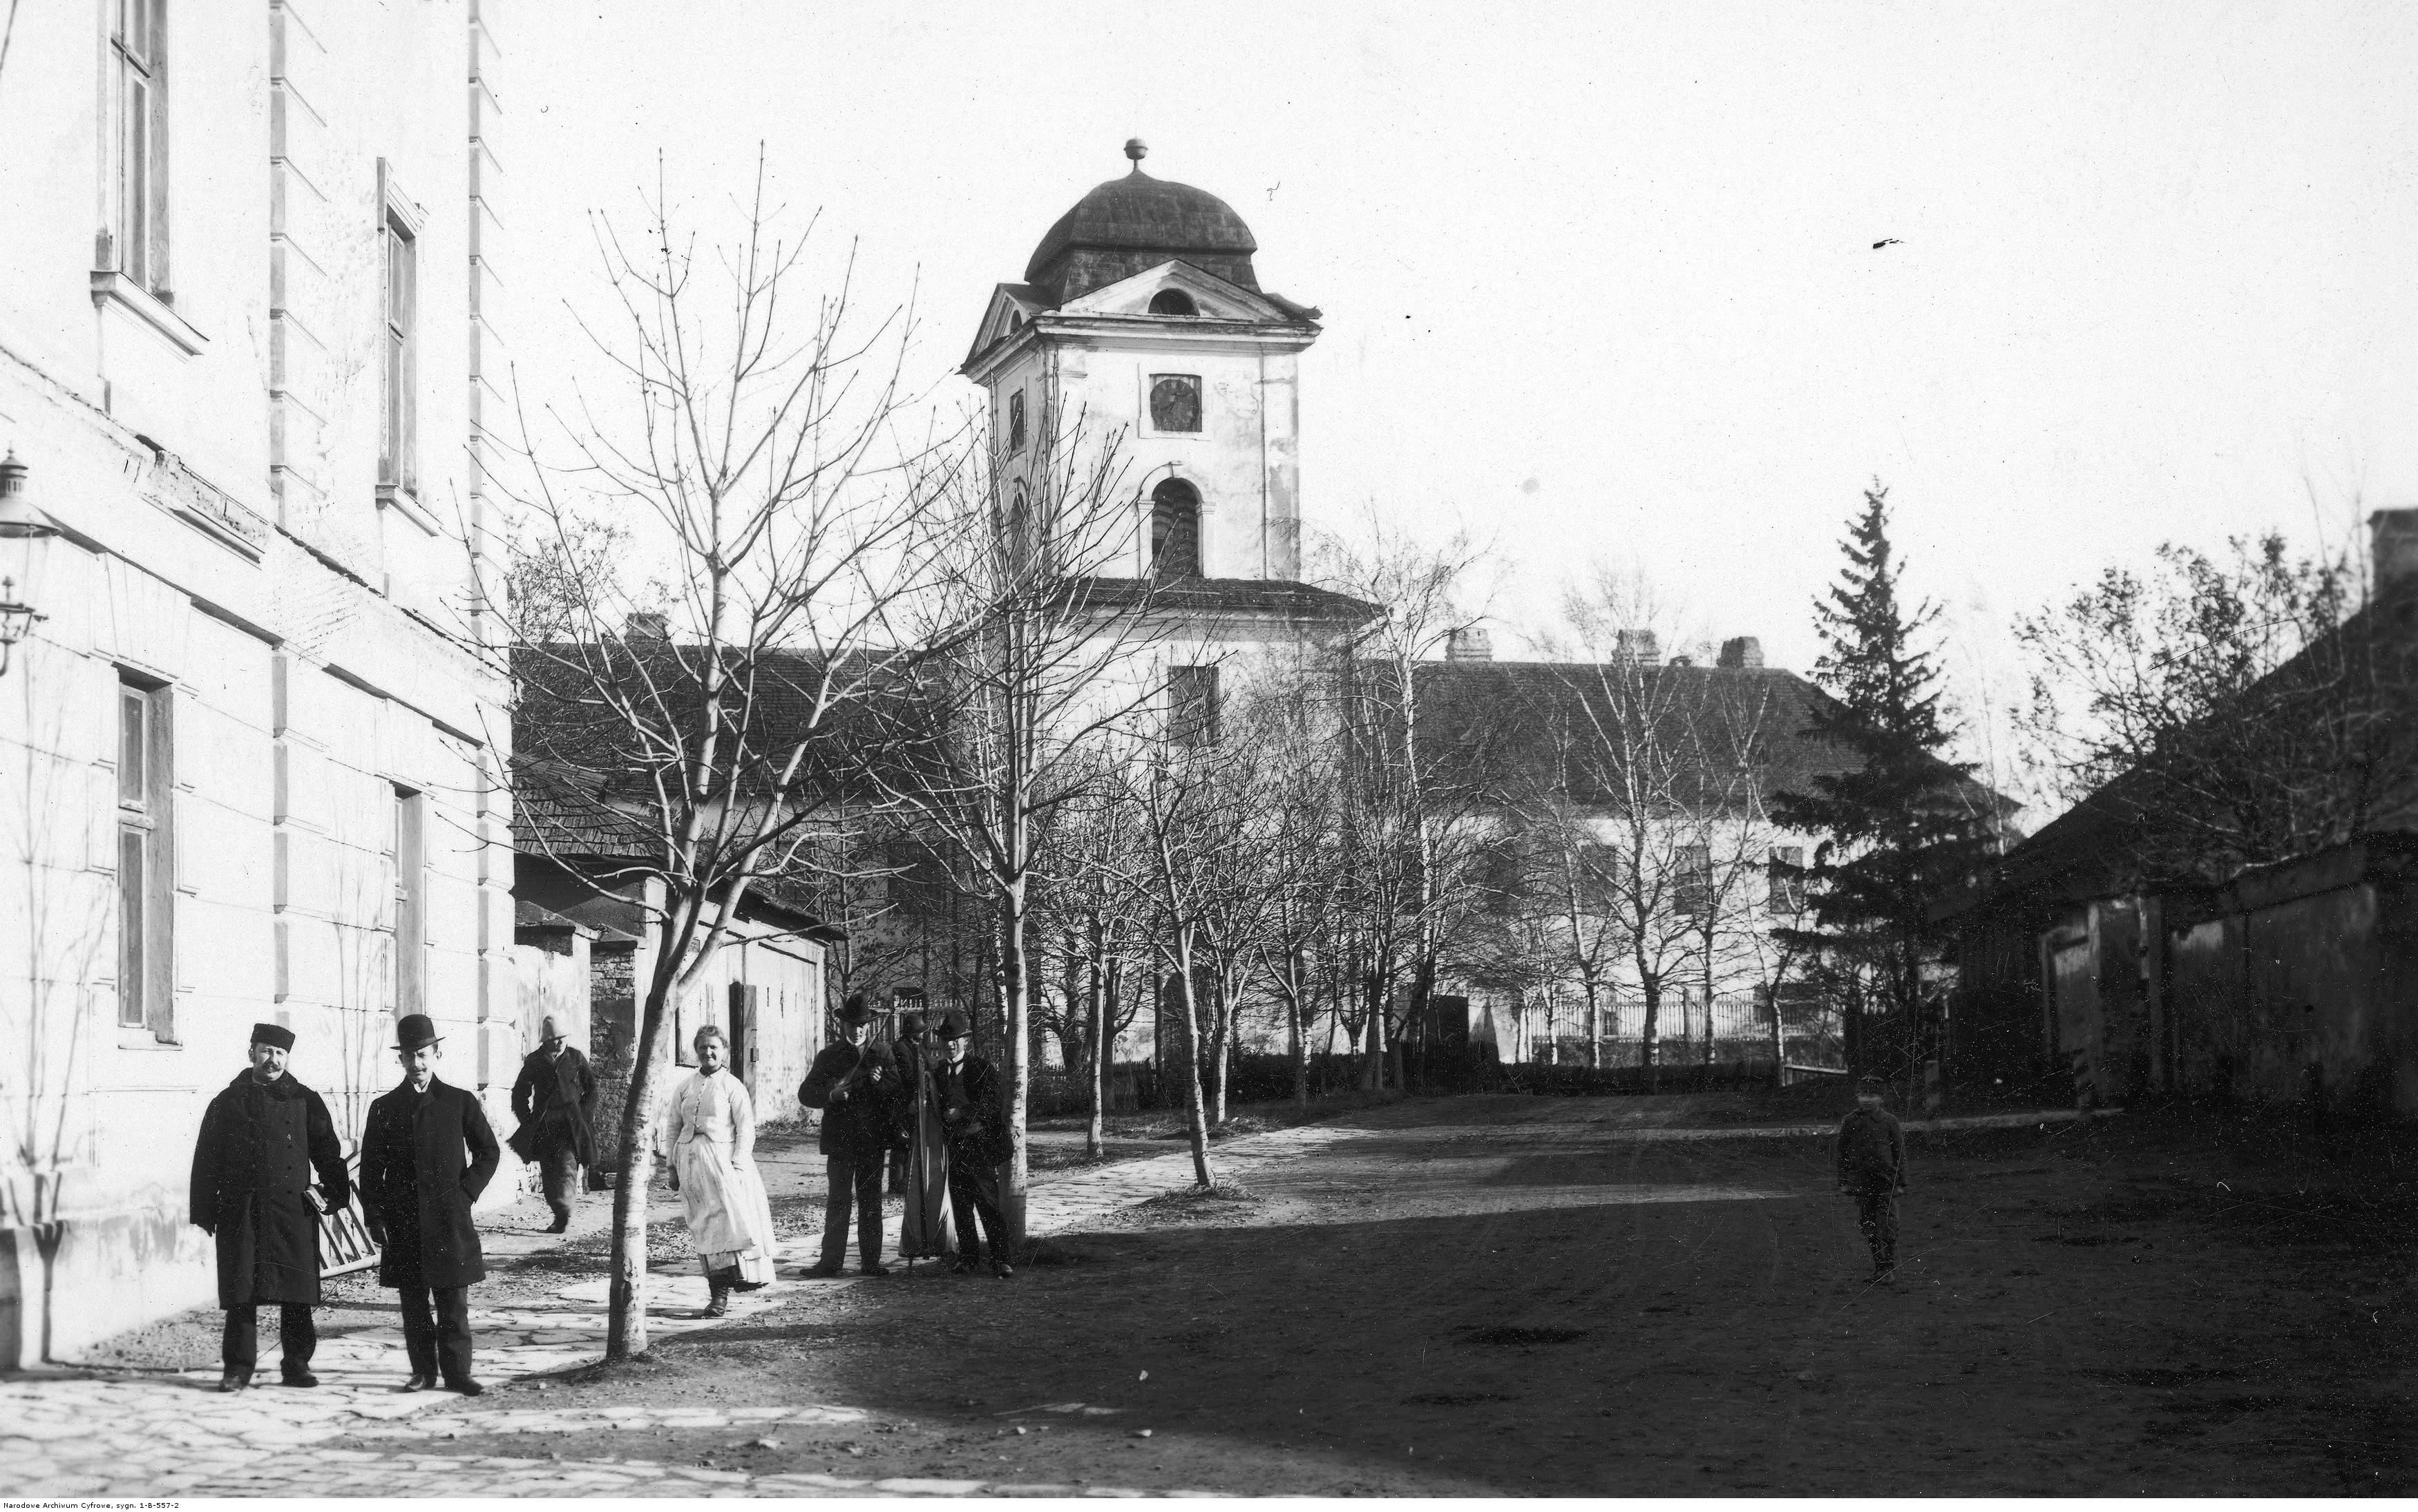 Siedziba Sądu Okręgowego w Rzeszowie znajdująca się w Zamku Lubomirskich. Widok zewnętrzny, rok 1929 -1939